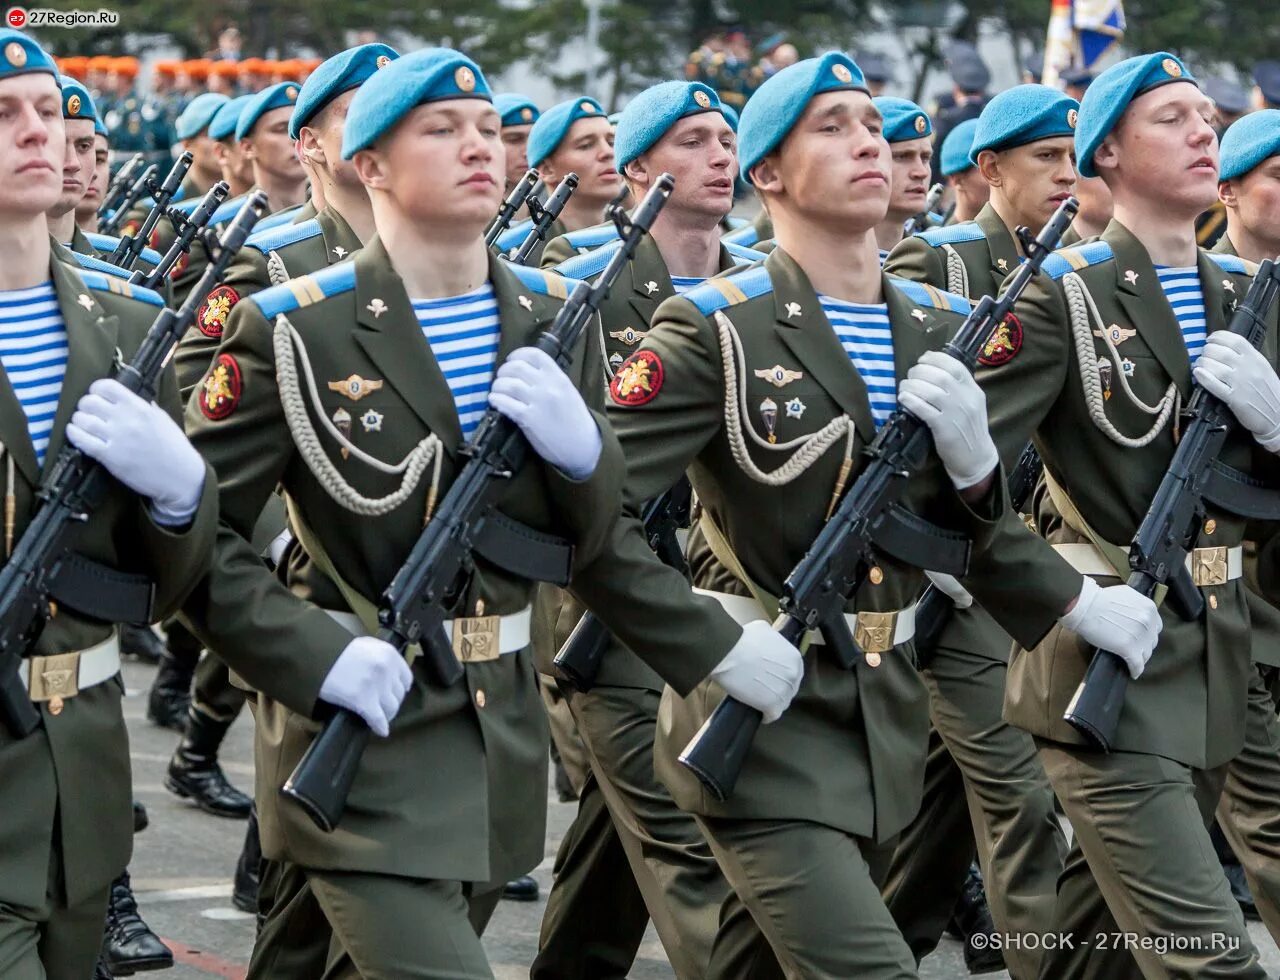 Парад победы солдаты. Военная форма. Солдат в парадной форме. Парадная форма военнослужащих. Парадная форма солдата Российской армии.